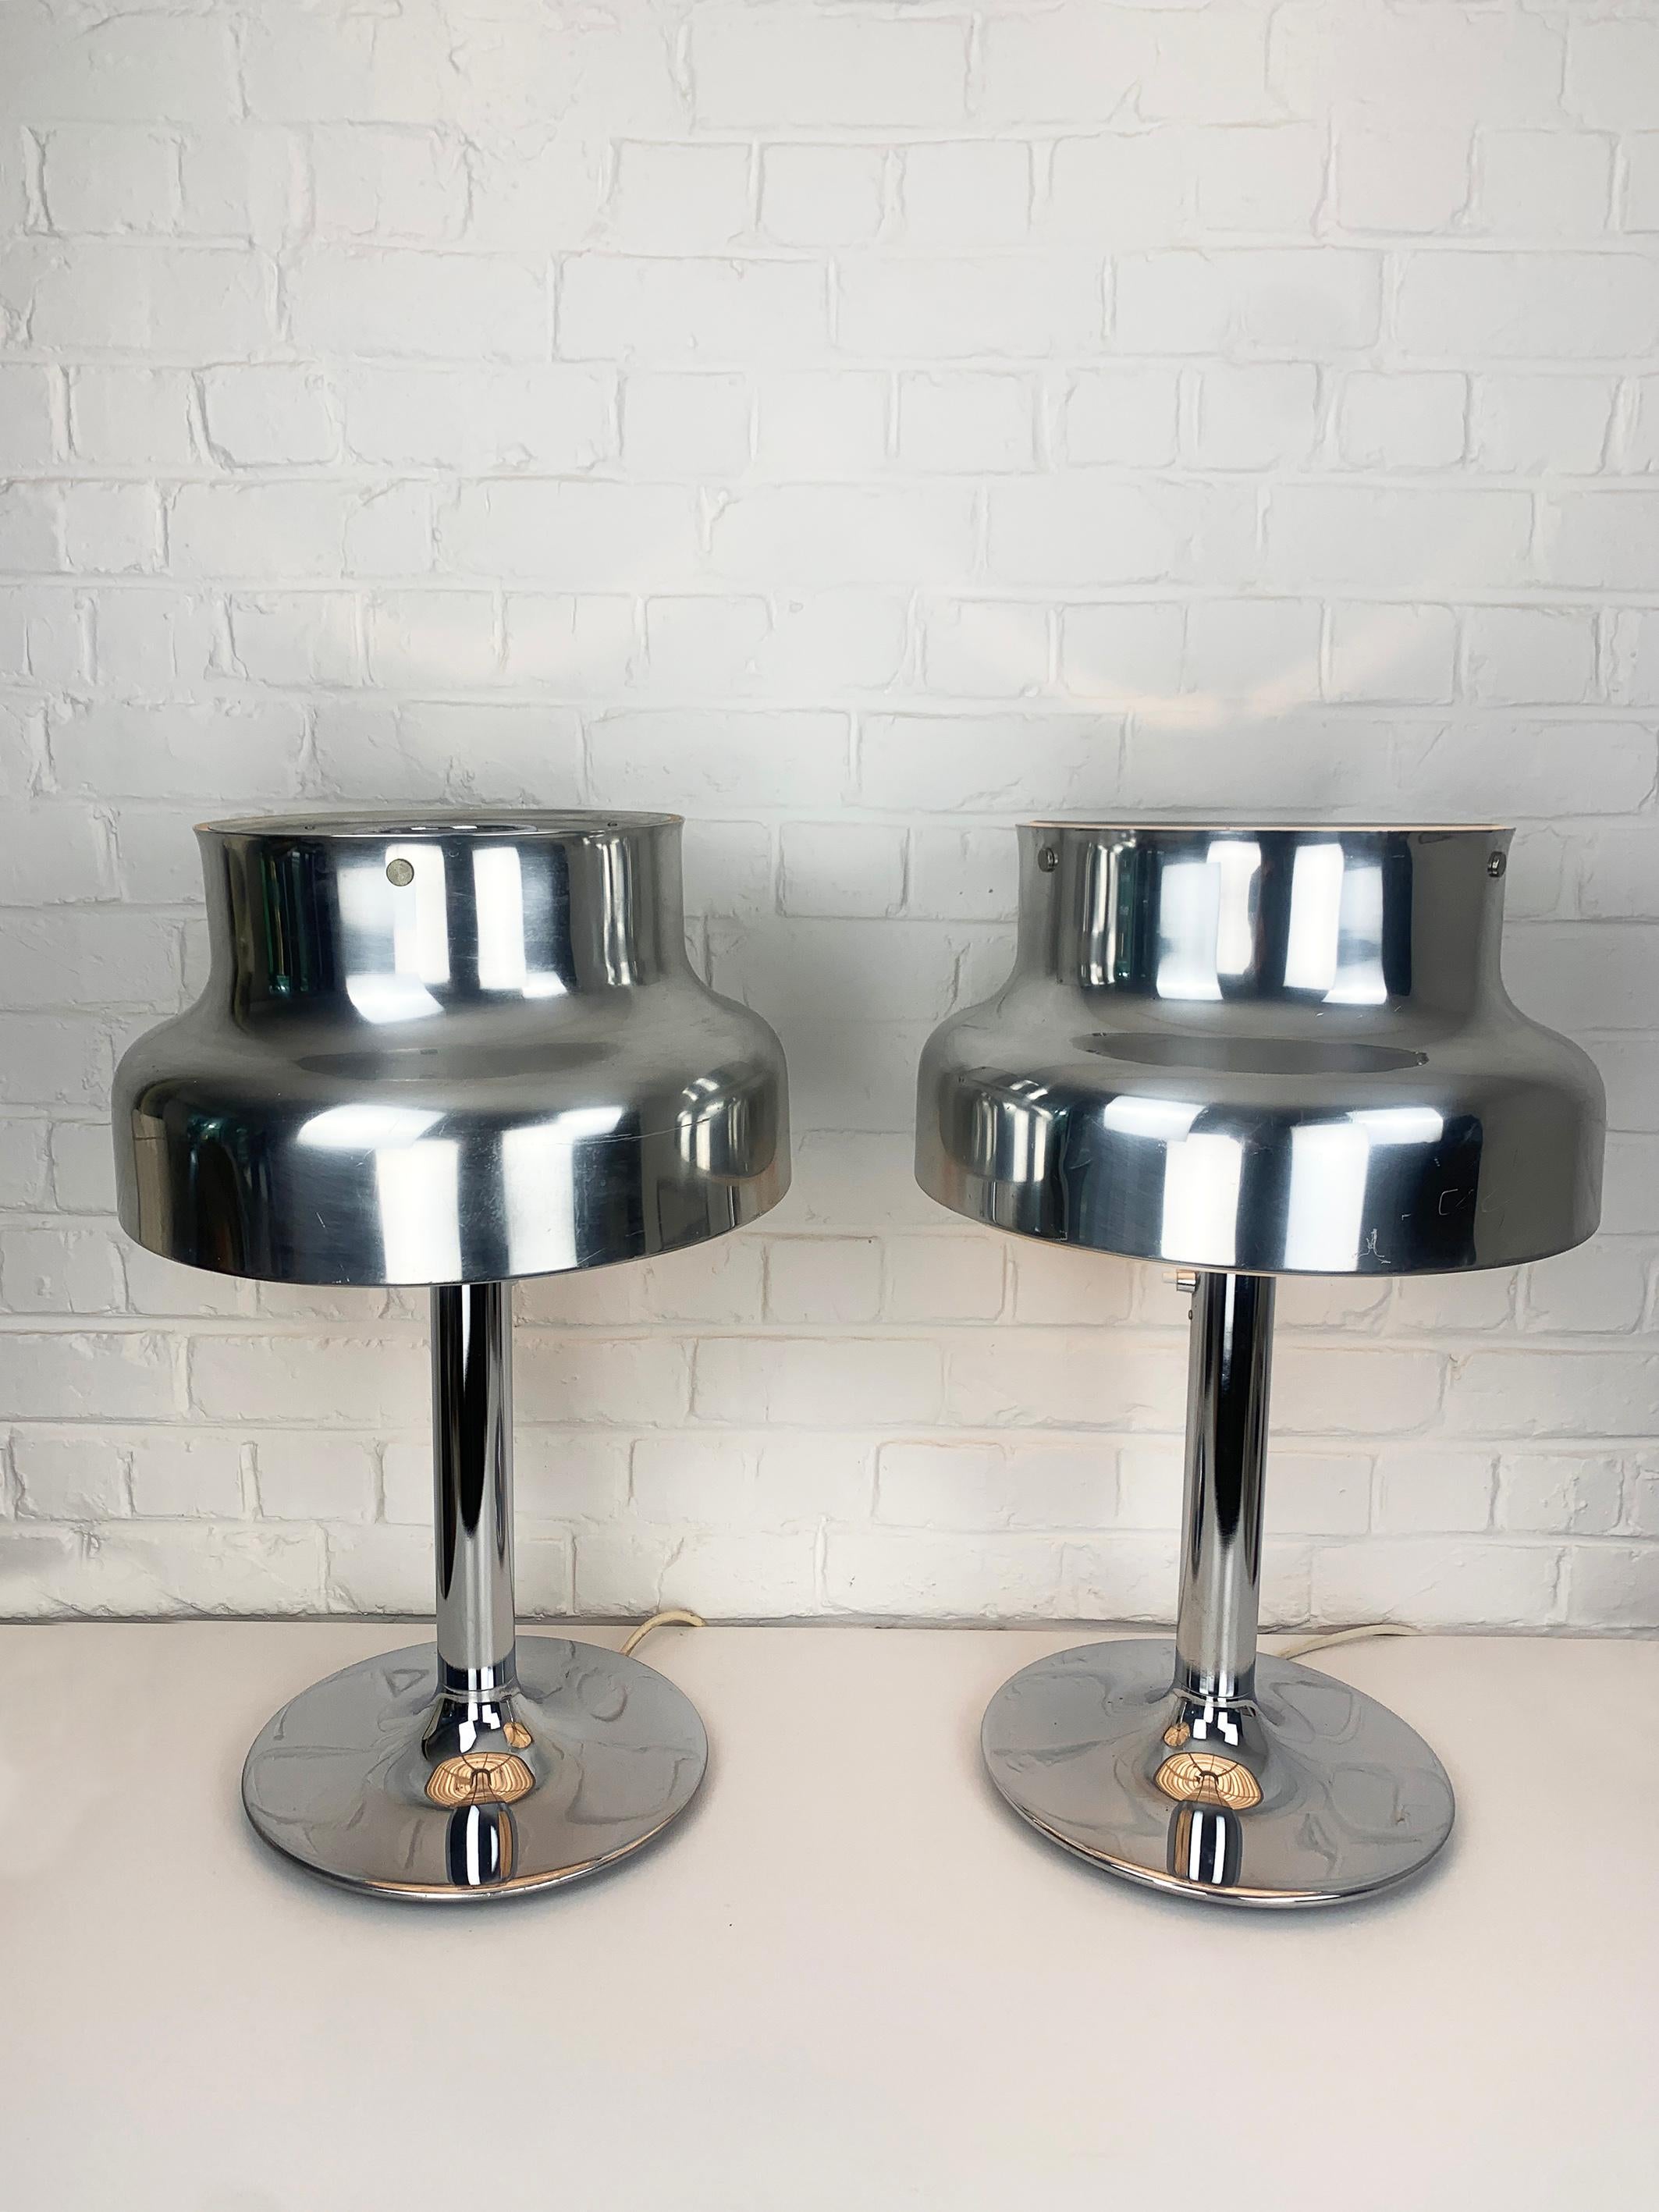 Rare paire de lampes de table Bumling en aluminium/chrome. Les deux lampes sont étiquetées. 

La série de lampes Bumling a été conçue par Anders Pehrson pour Ateljé Lyktan à Åhus, en Suède, à la fin des années 1960. 

Né en 1912, Anders Pehrson a